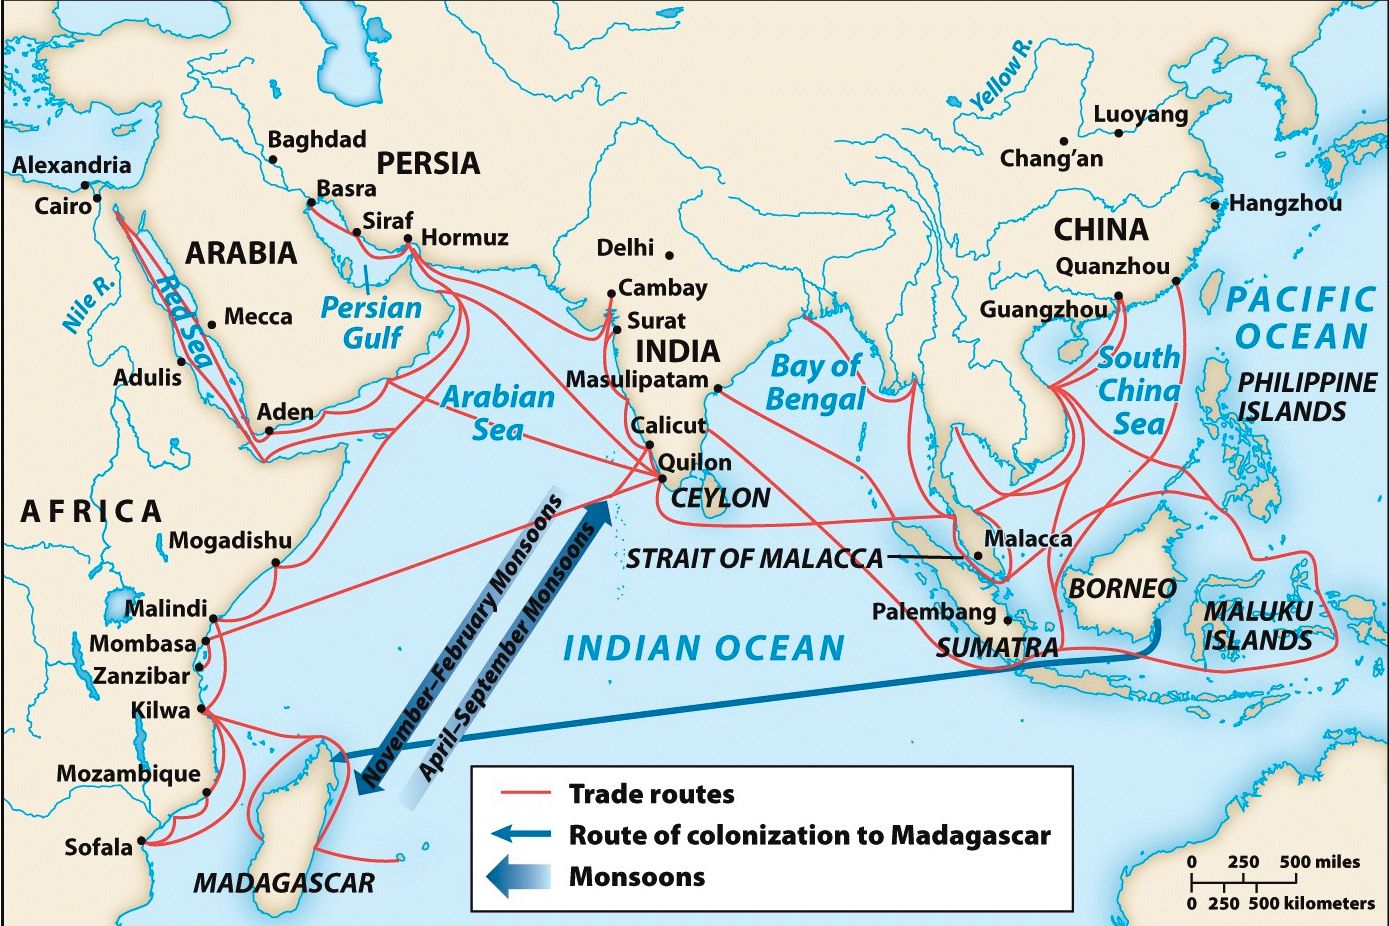 Indian Ocean Exchange Network. Source: Ways of the World